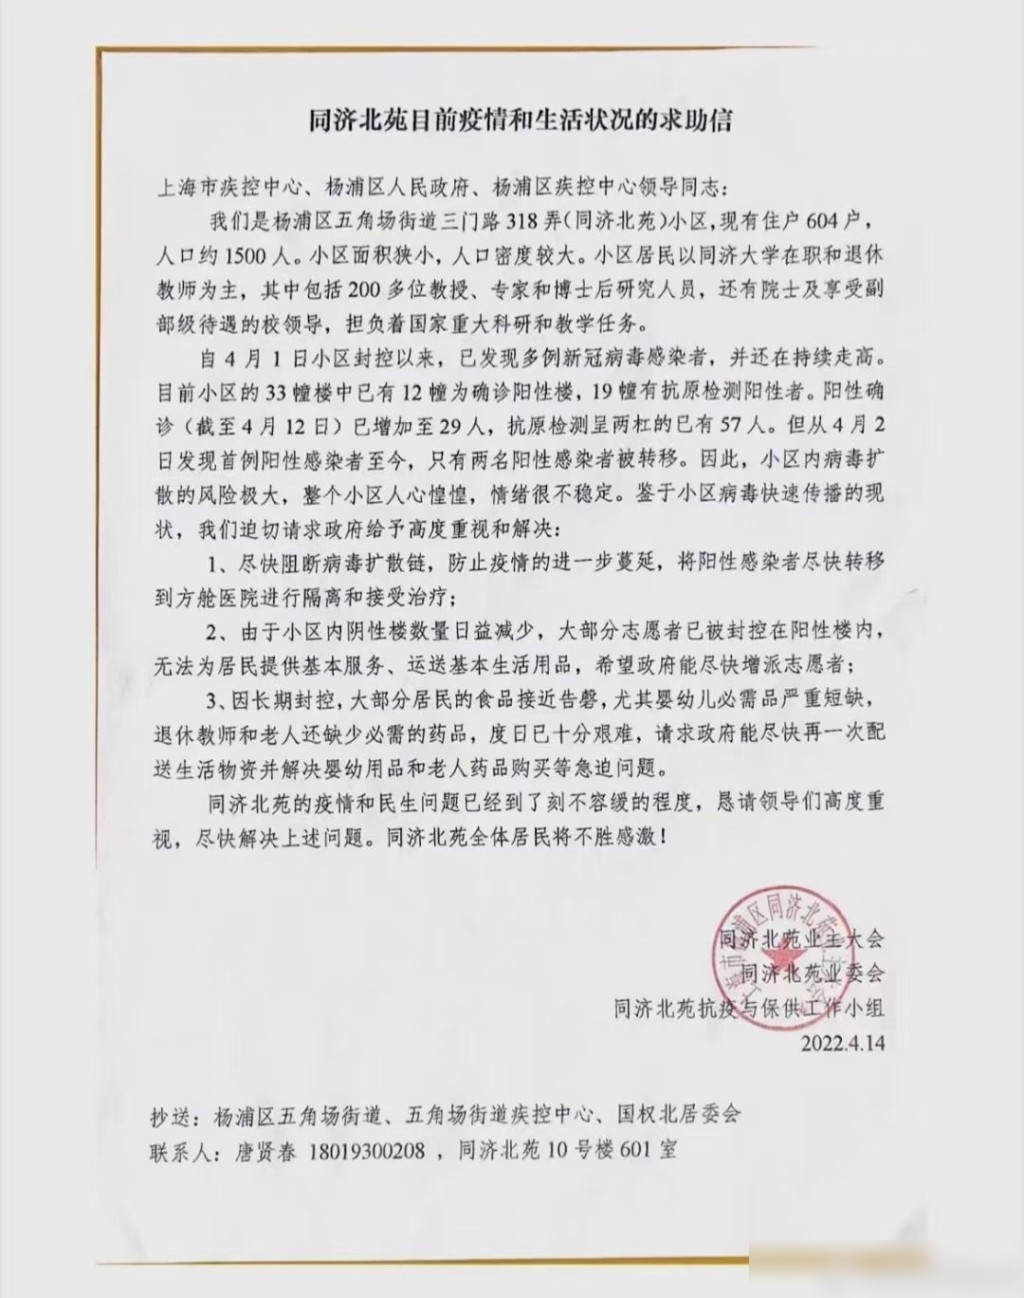 網上流傳一封上海同濟大學教工發出的求助信。網圖